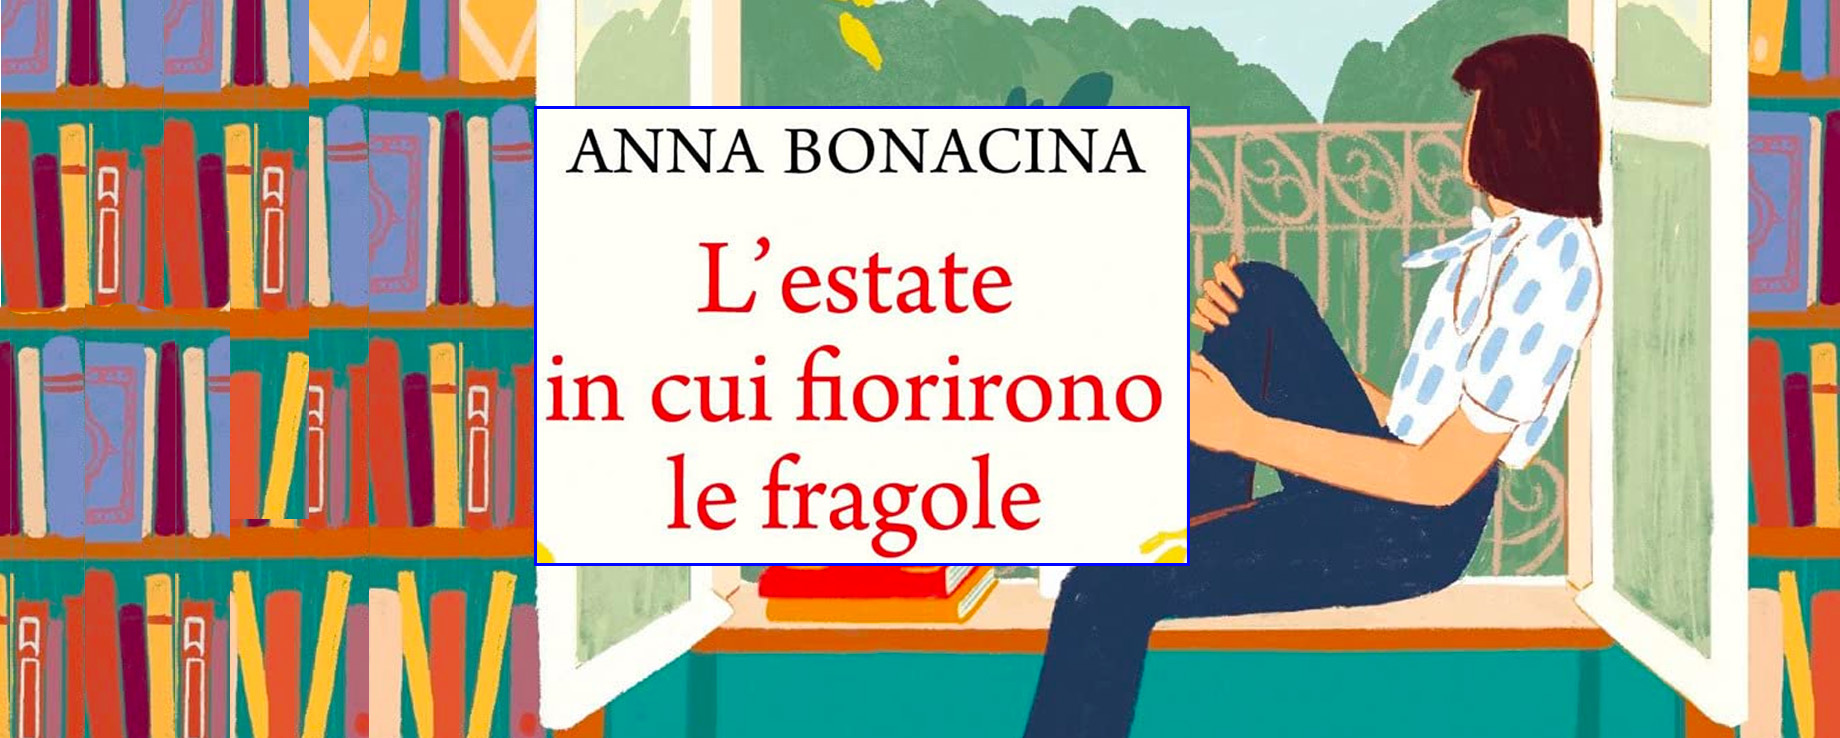 Anna Bonacina ci racconta come è nato il suo primo romanzo “L’estate in cui fiorirono le fragole”